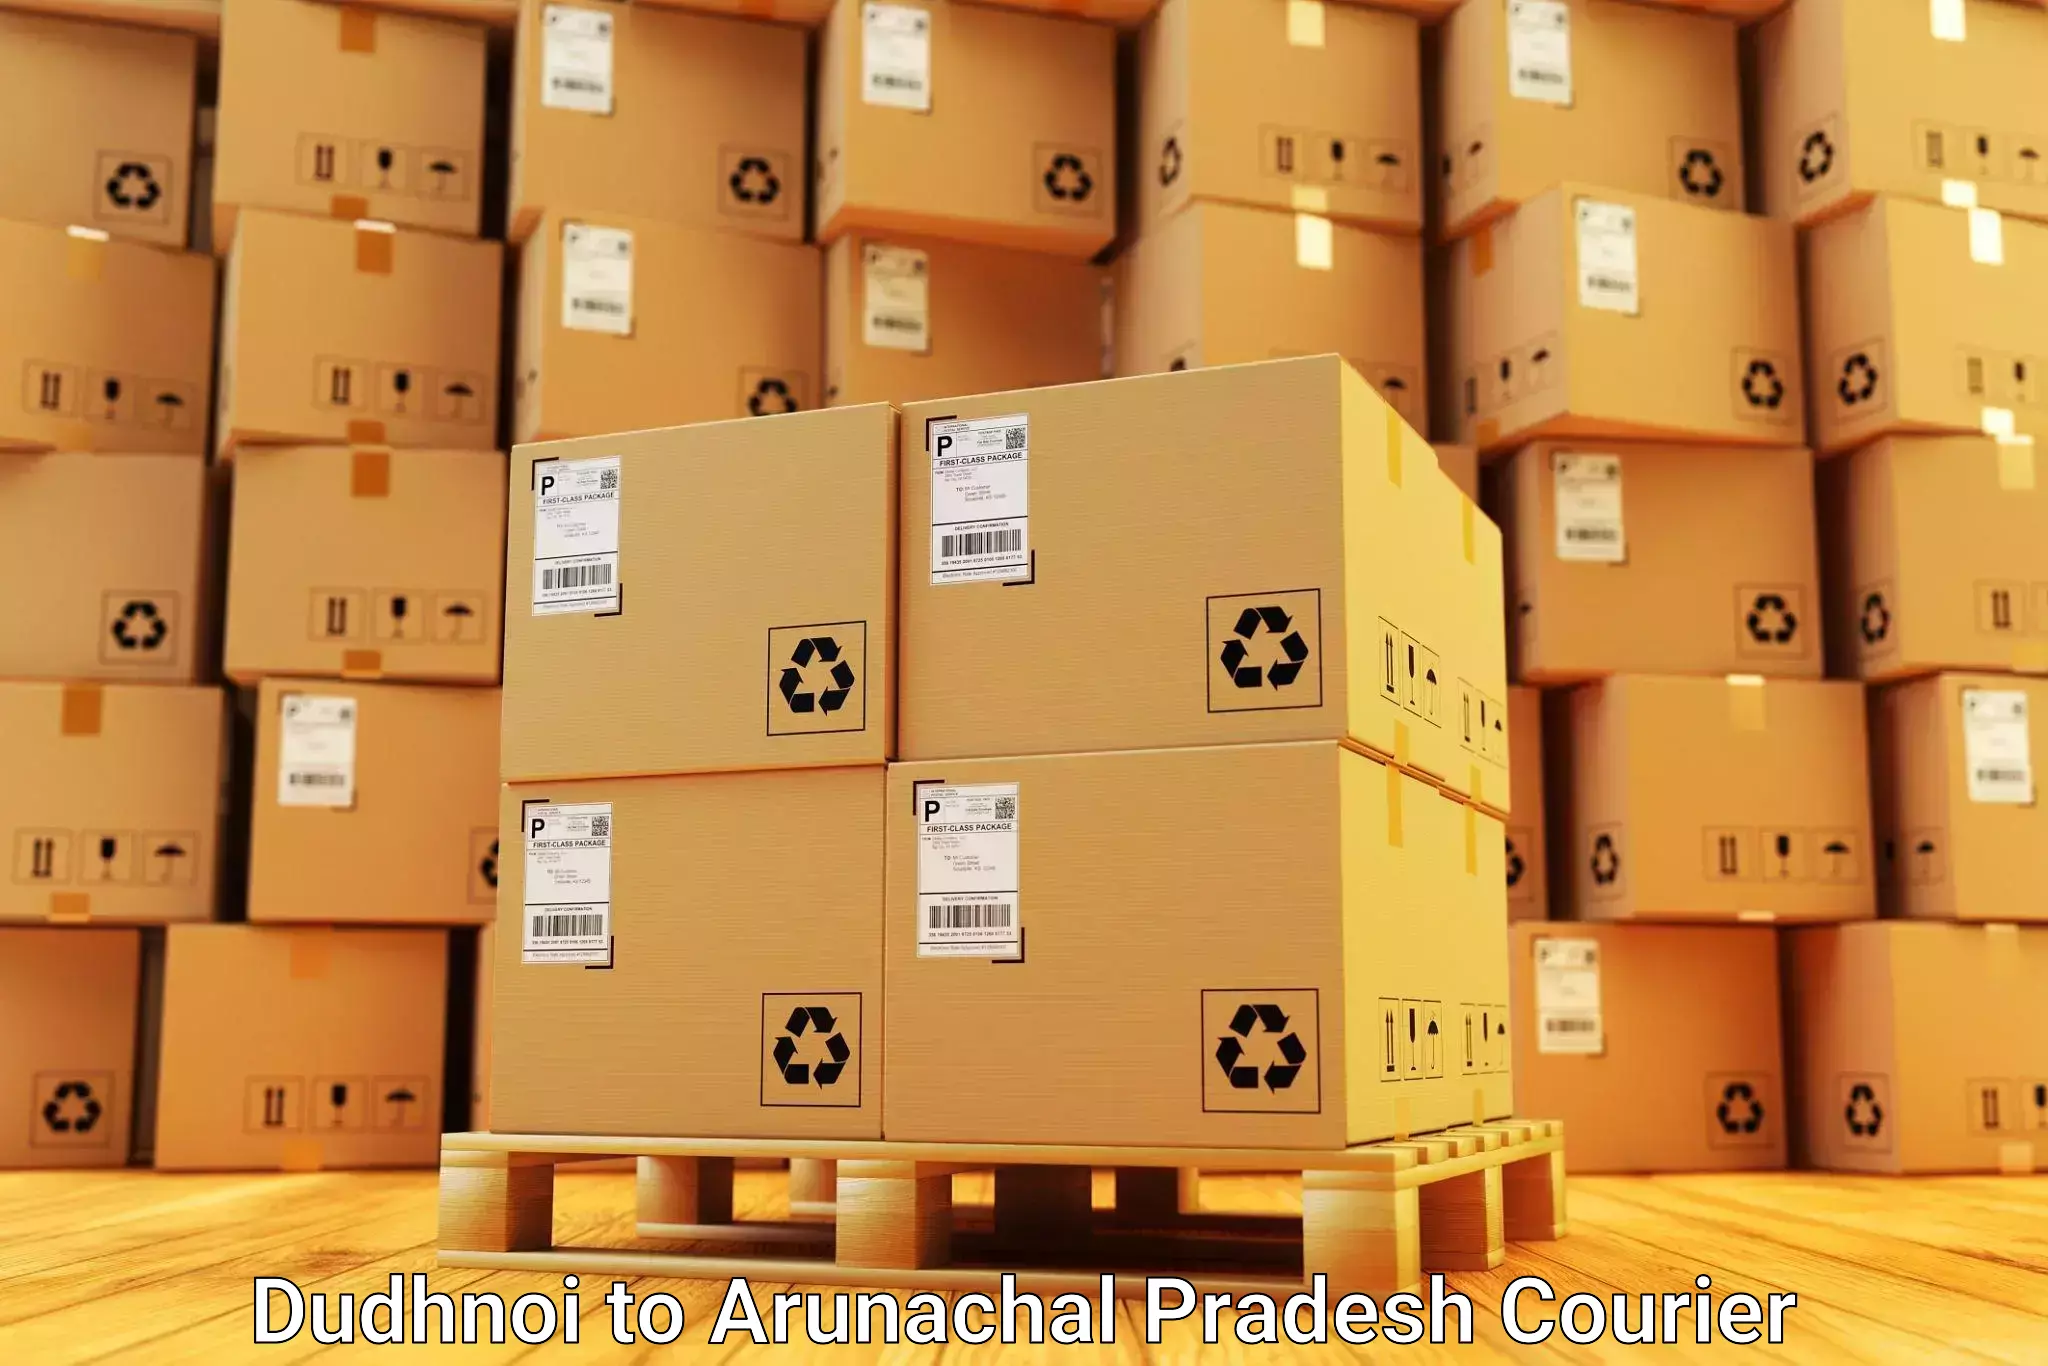 Furniture moving plans in Dudhnoi to Arunachal Pradesh